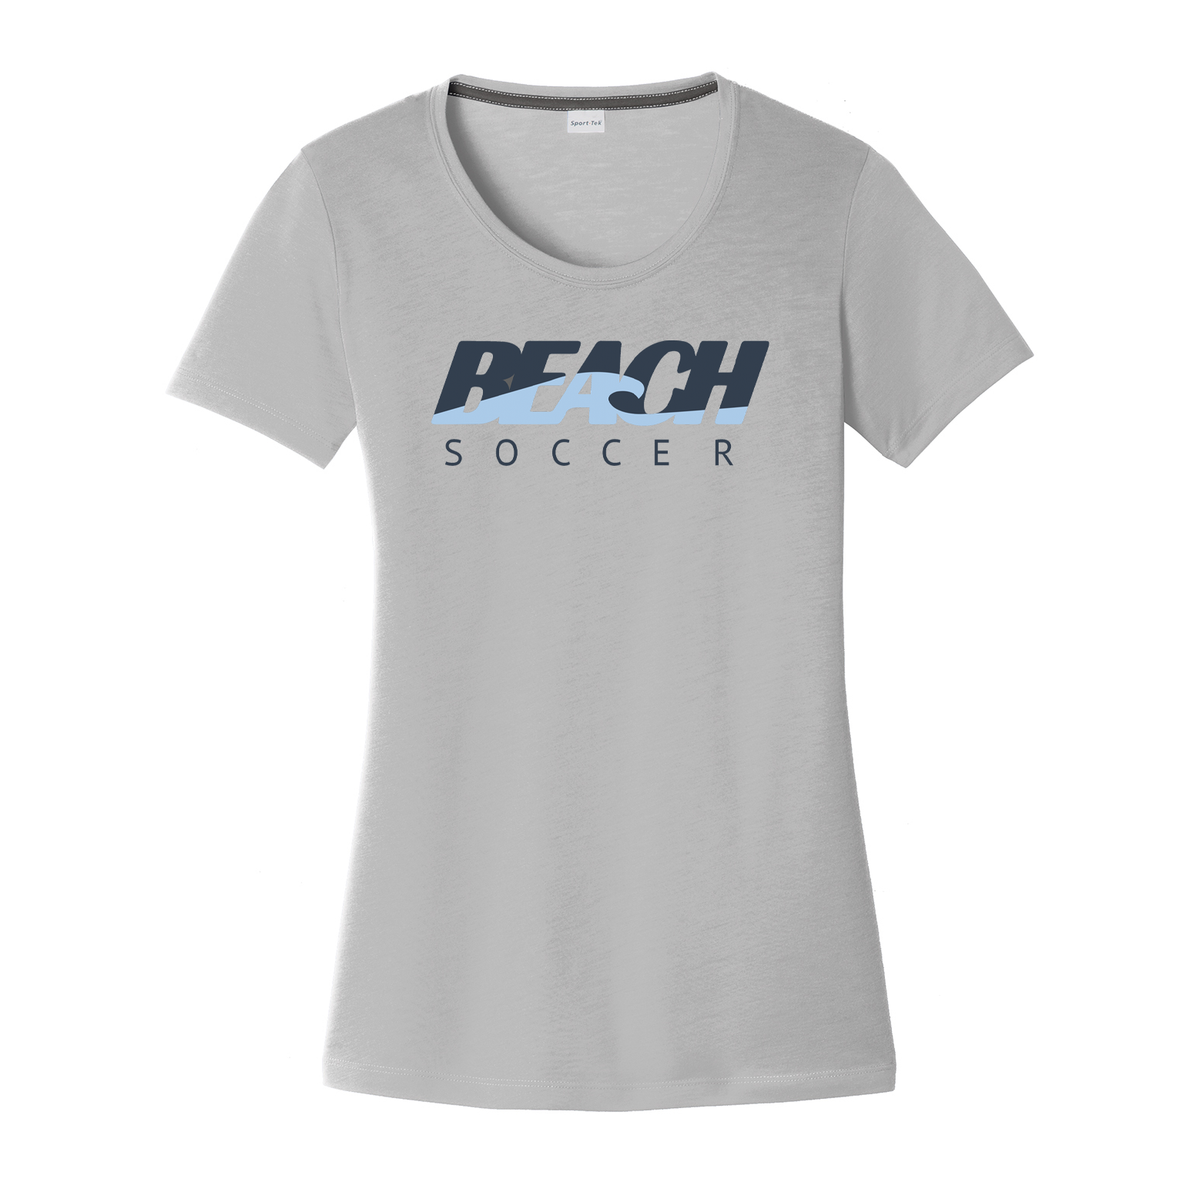 Long Beach Soccer Women's CottonTouch Performance T-Shirt